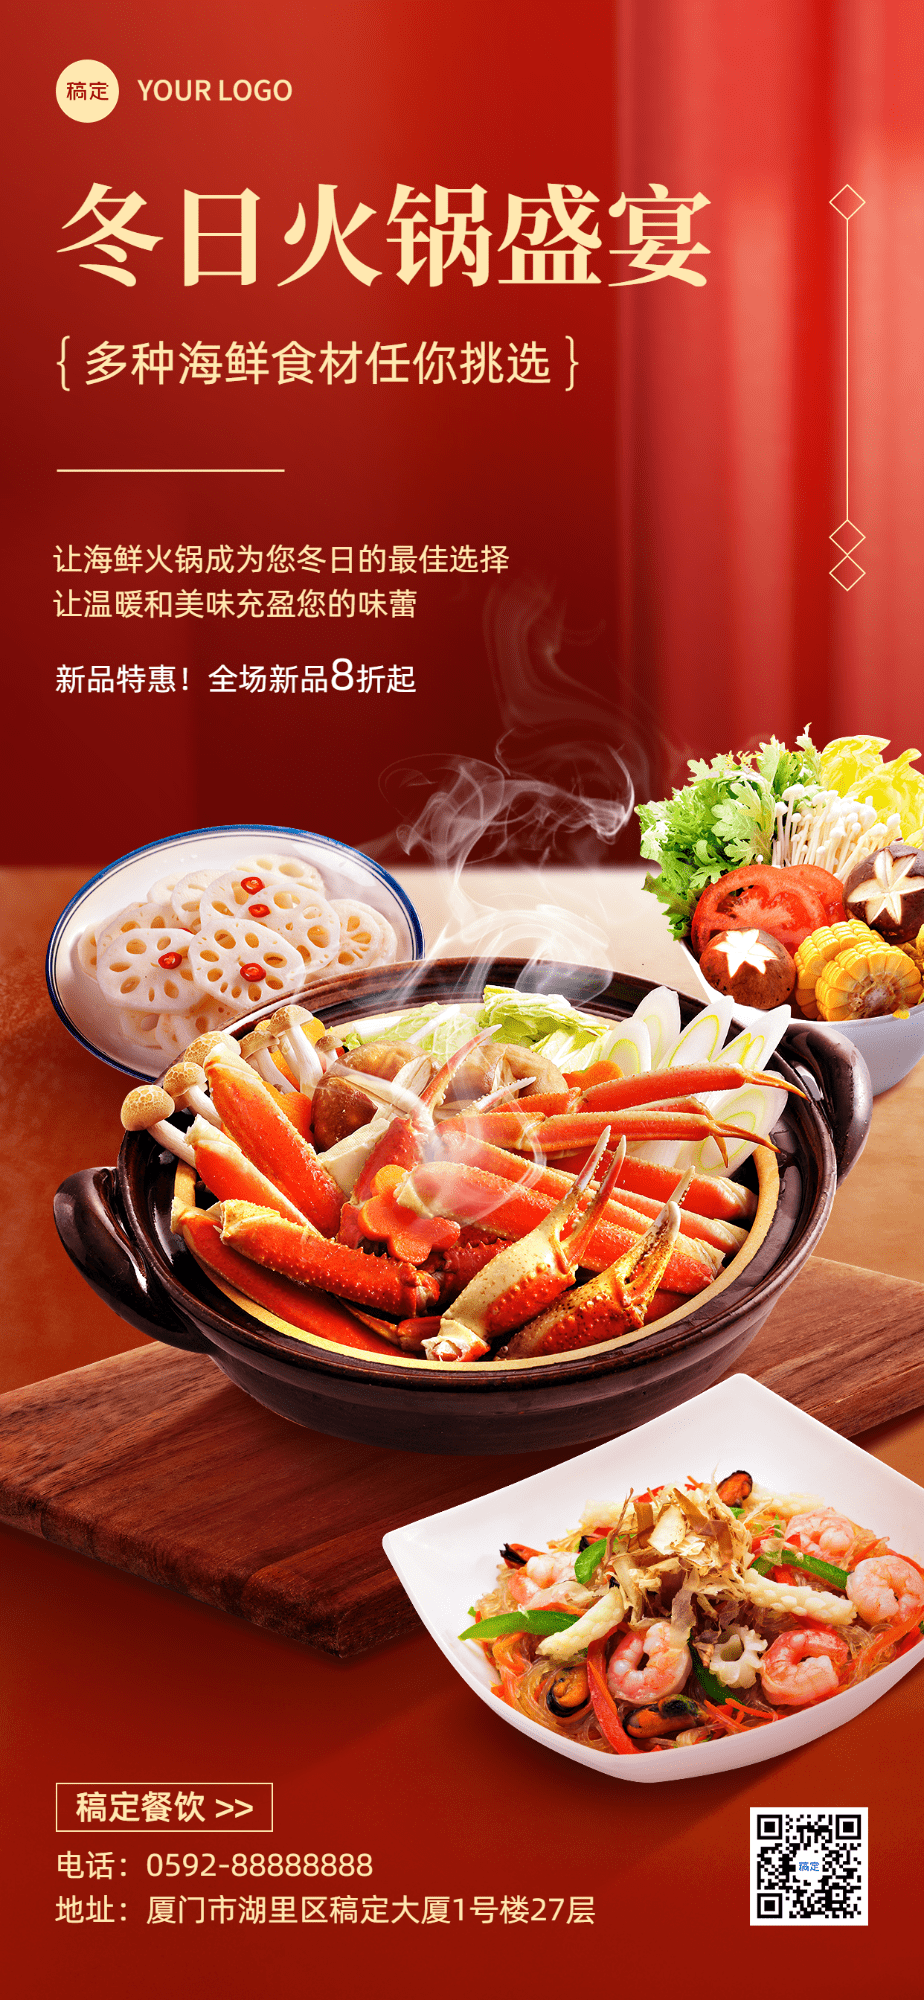 餐饮门店特色菜品火锅中餐时令菜品营销场景合成全屏竖版海报